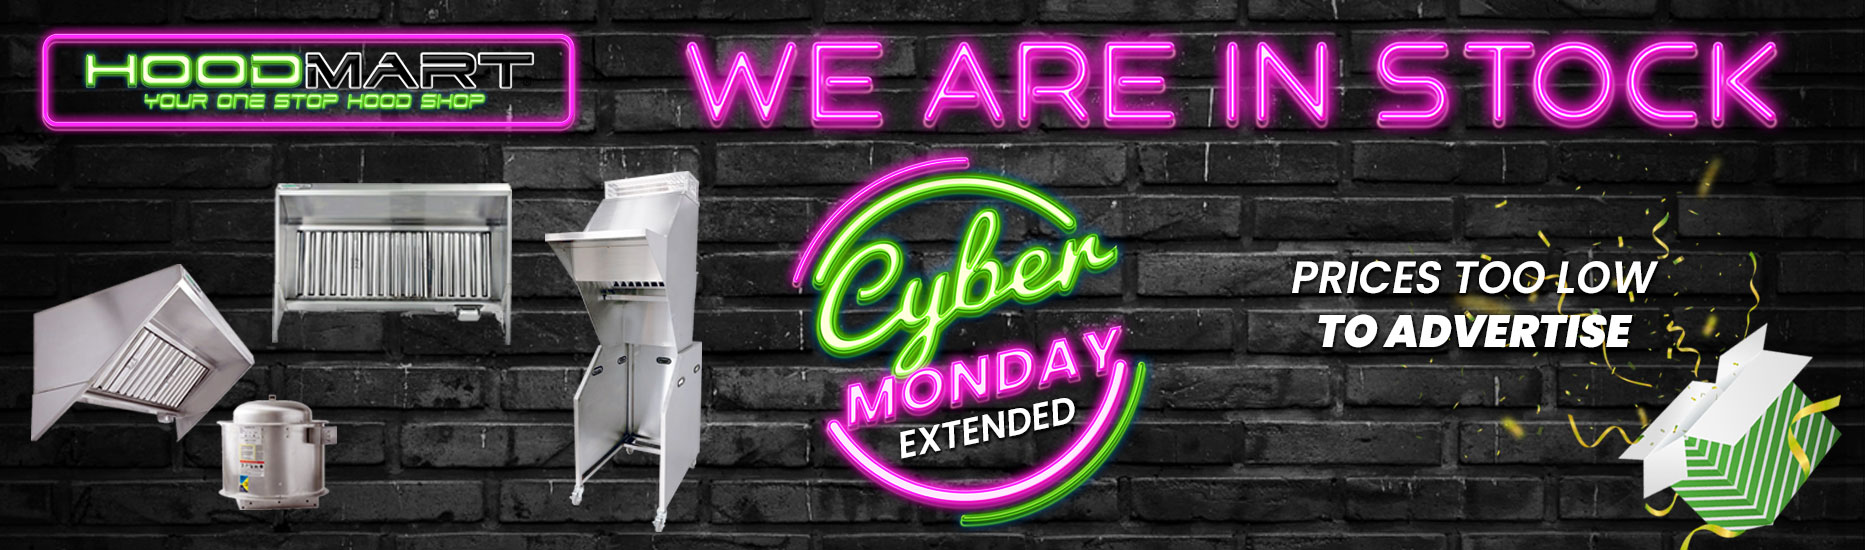 HoodMart | Cyber Monday